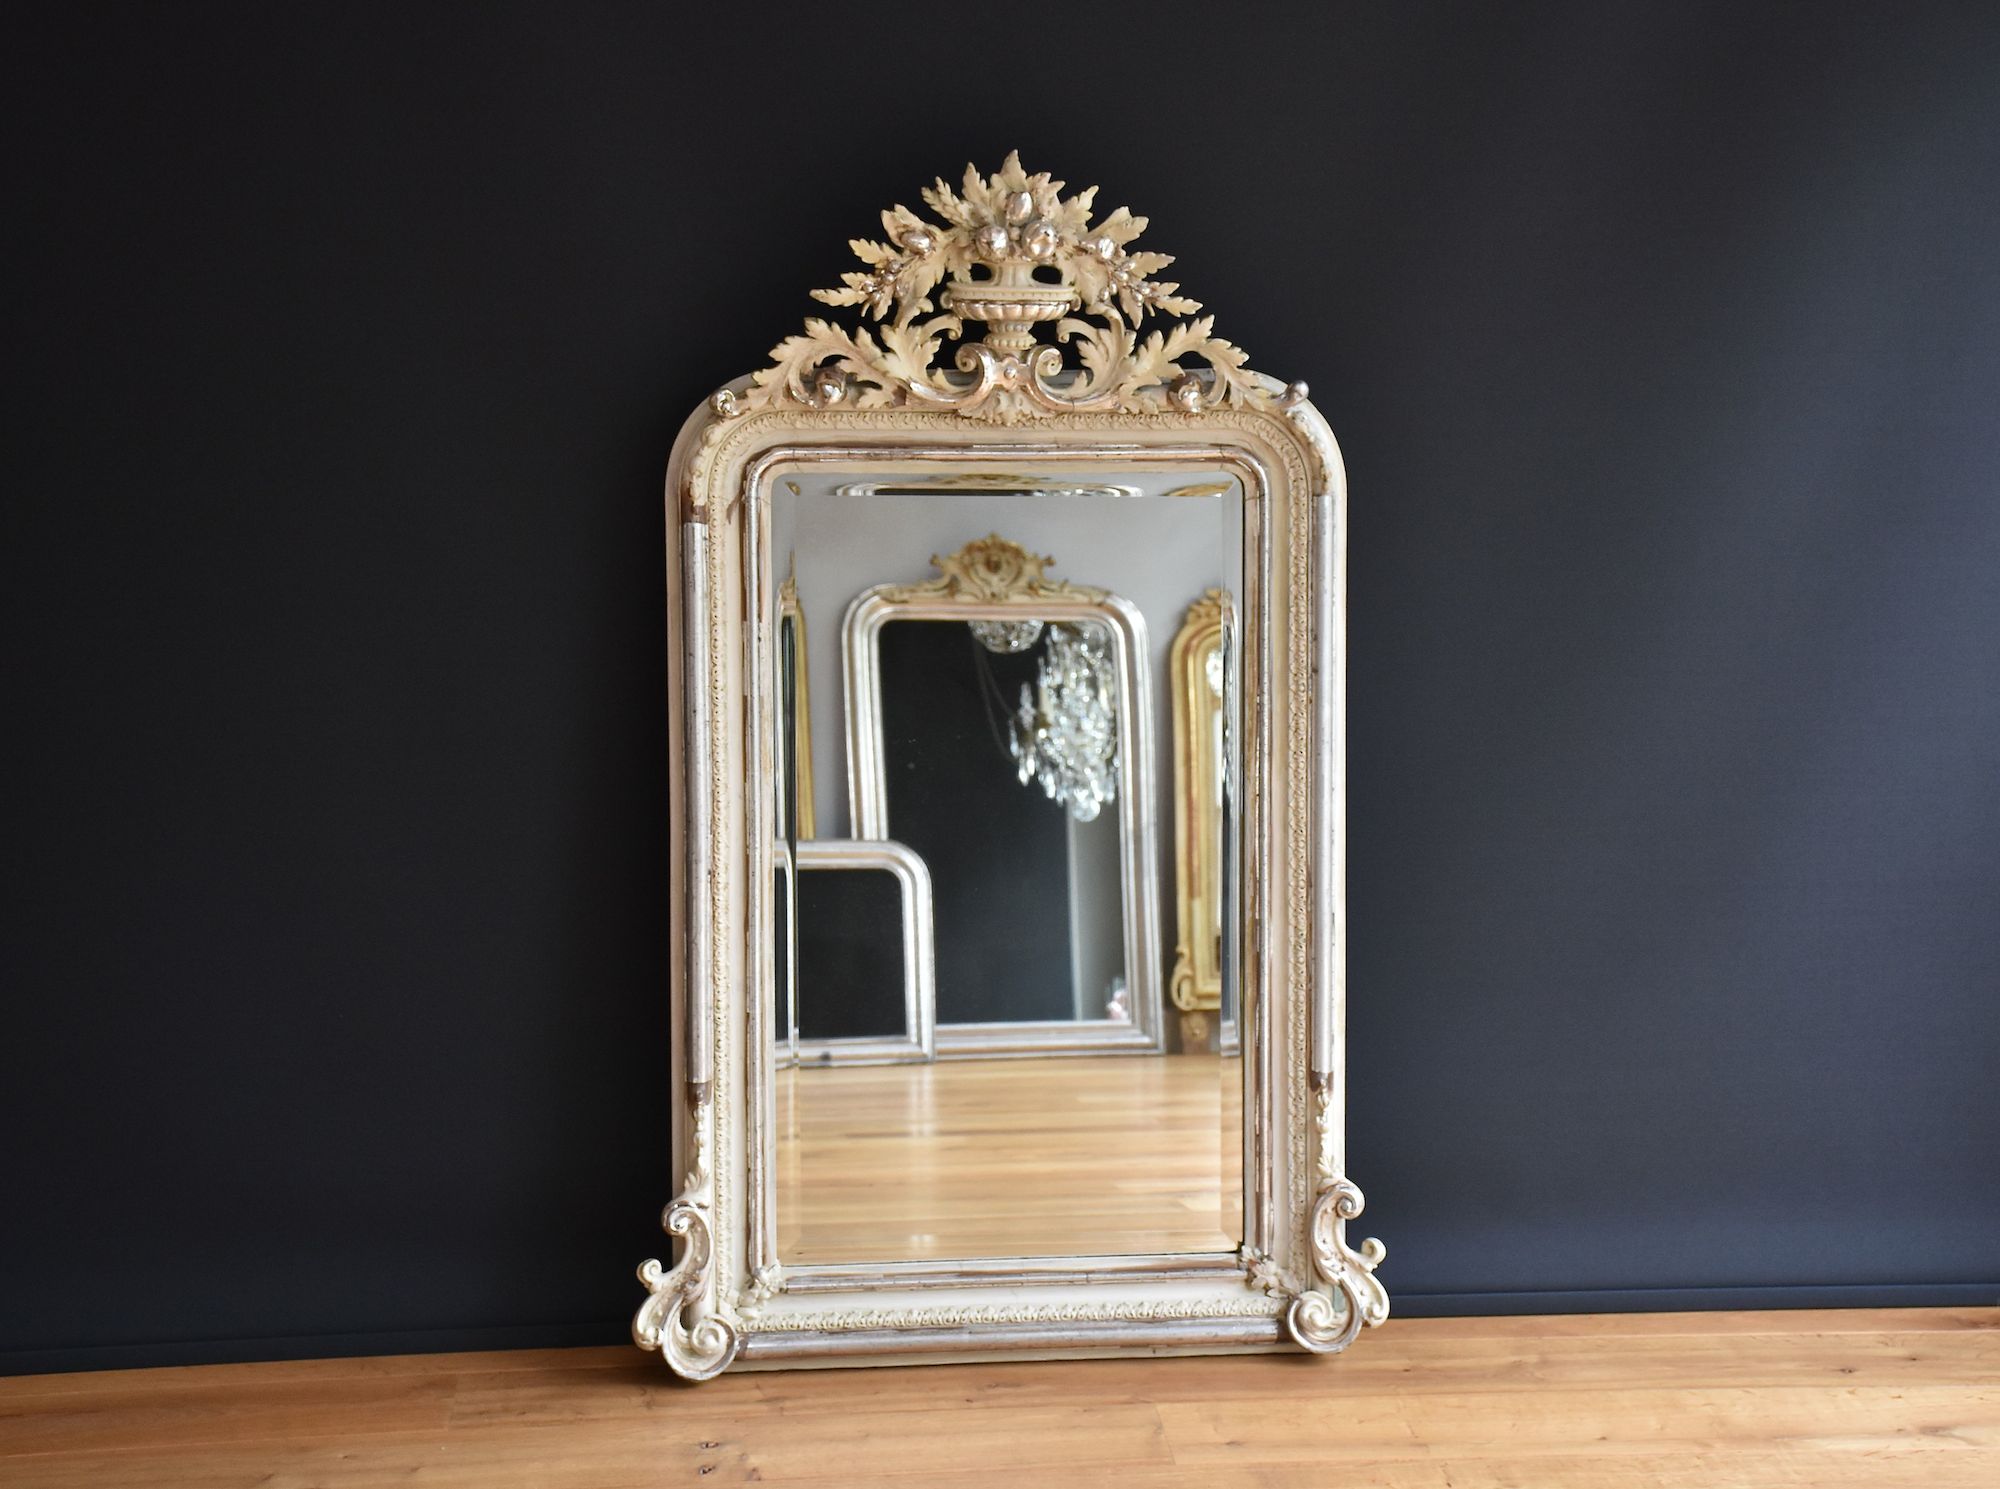 Franse zilveren spiegel met een schitterende kroon